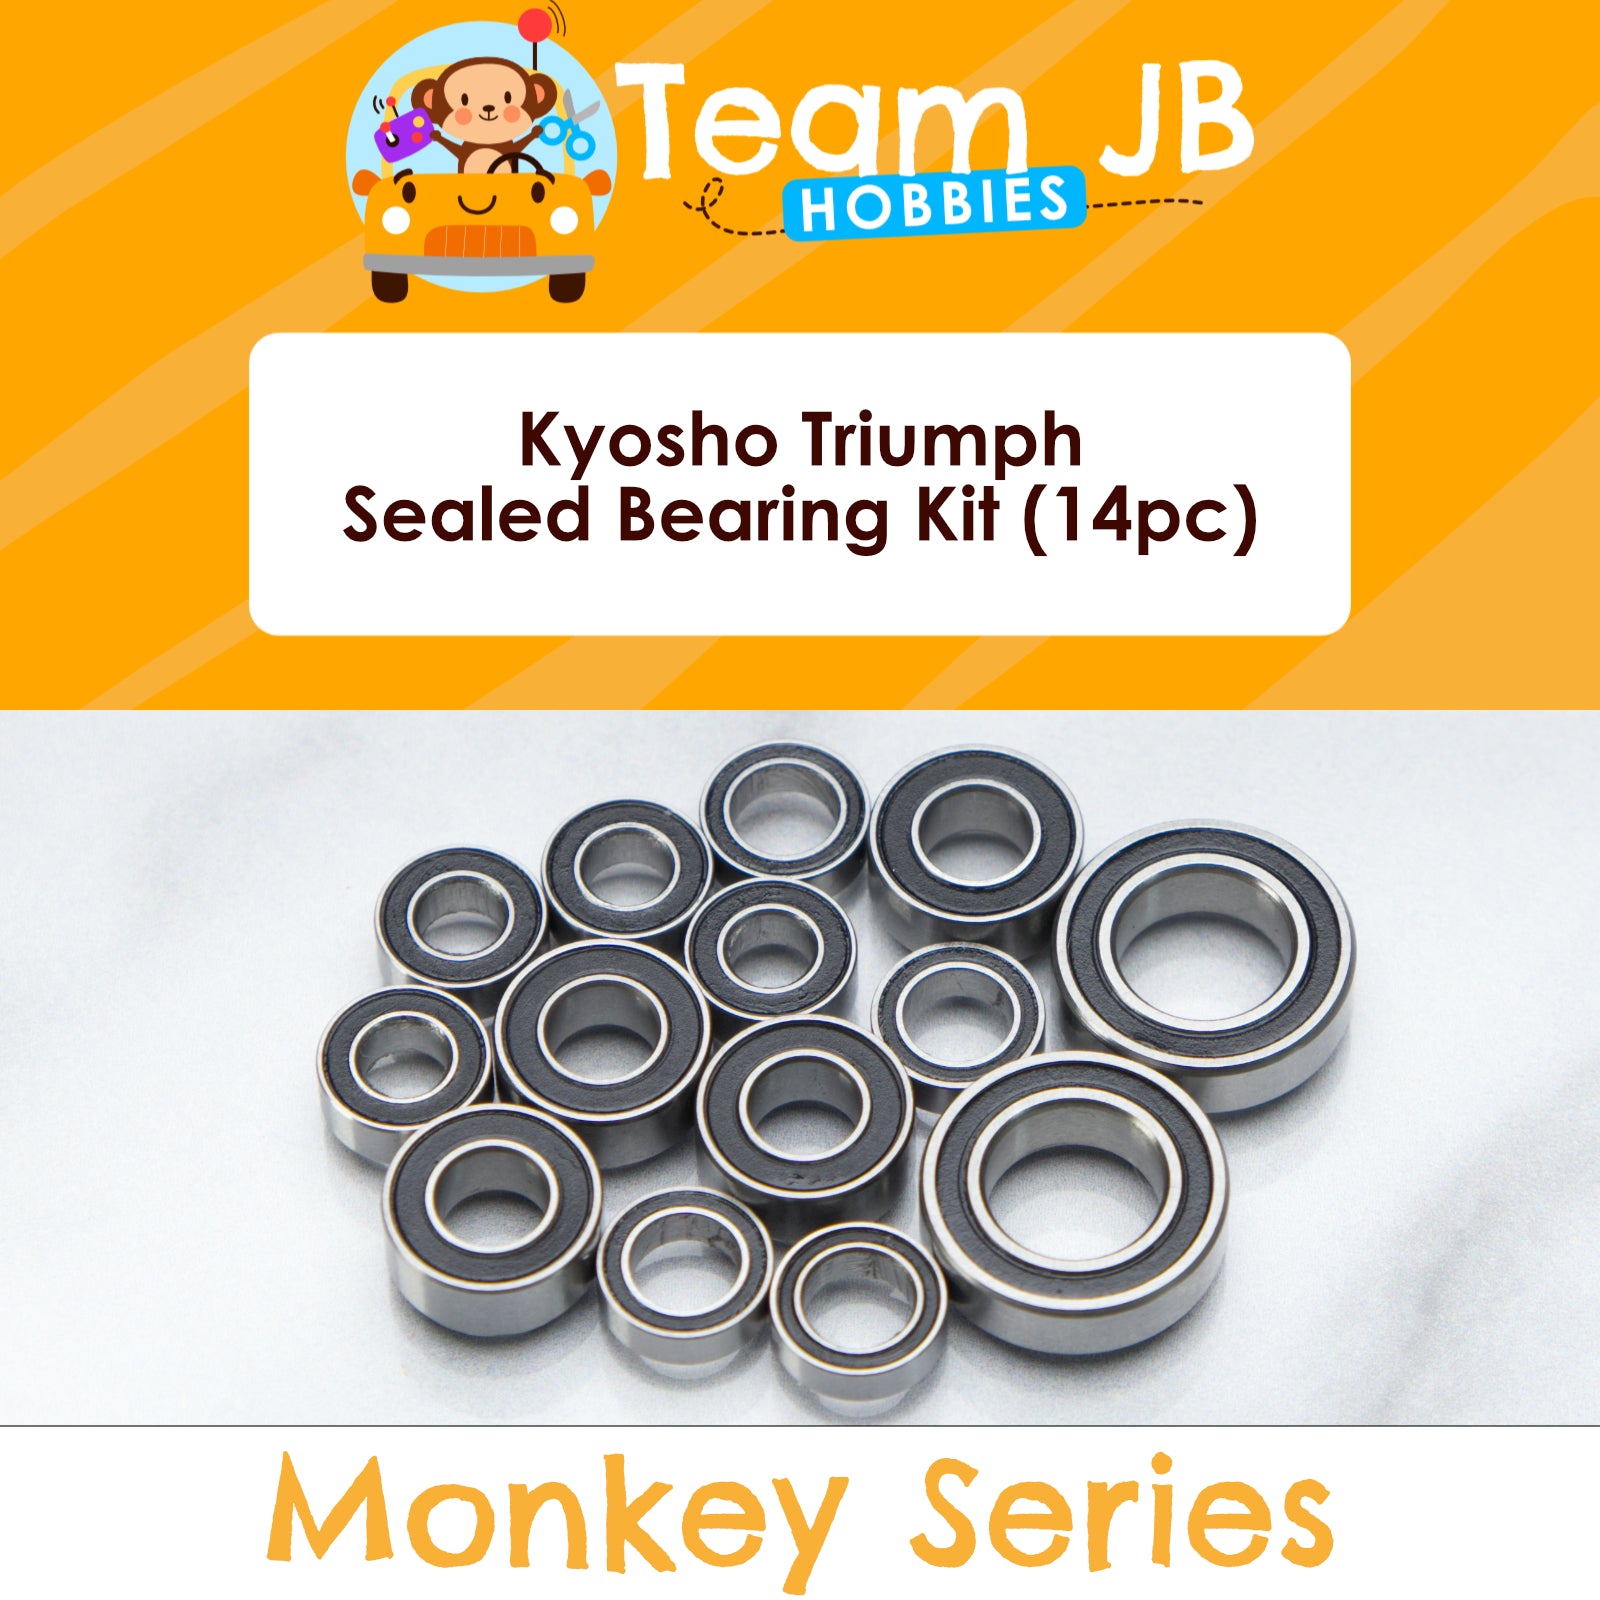 Kyosho Triumph - Sealed Bearing Kit